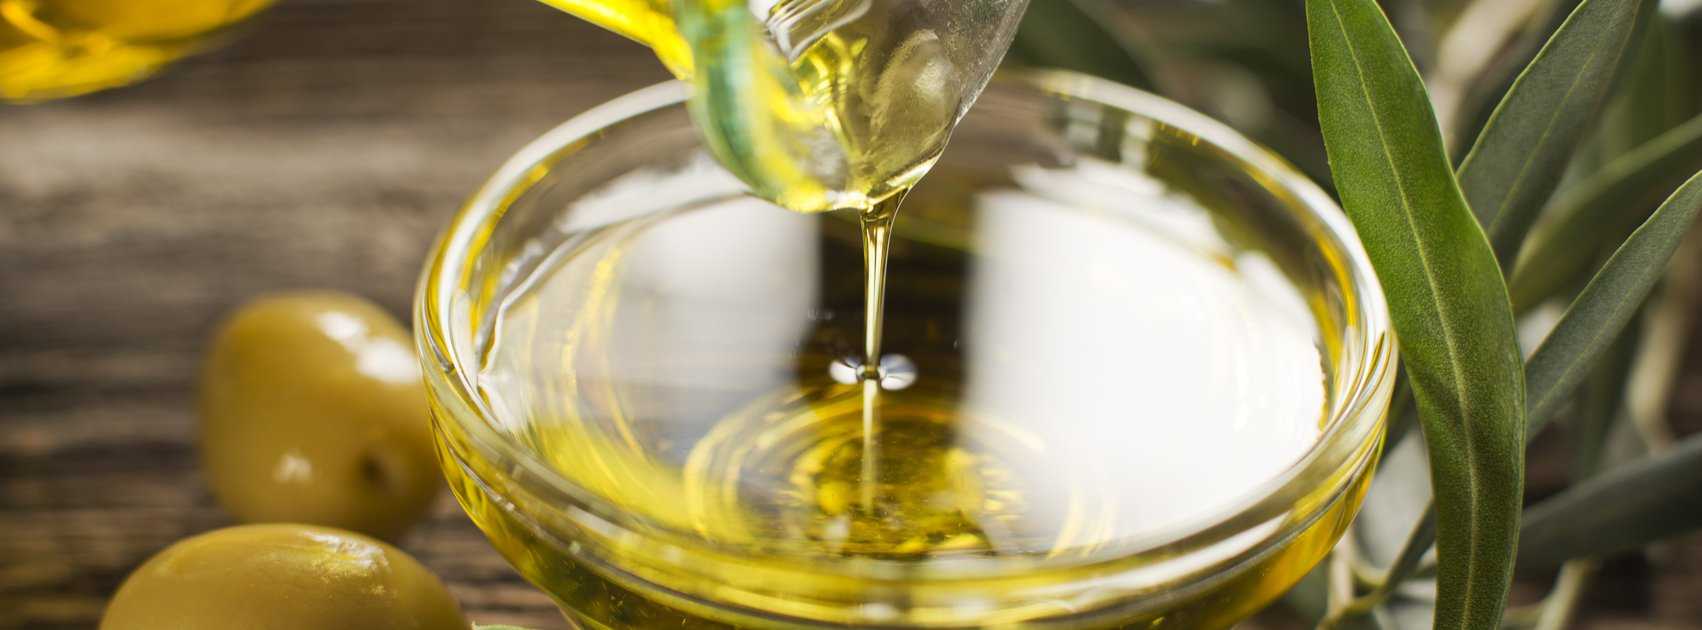 Лучшие рецепты масок для волос с оливковым маслом